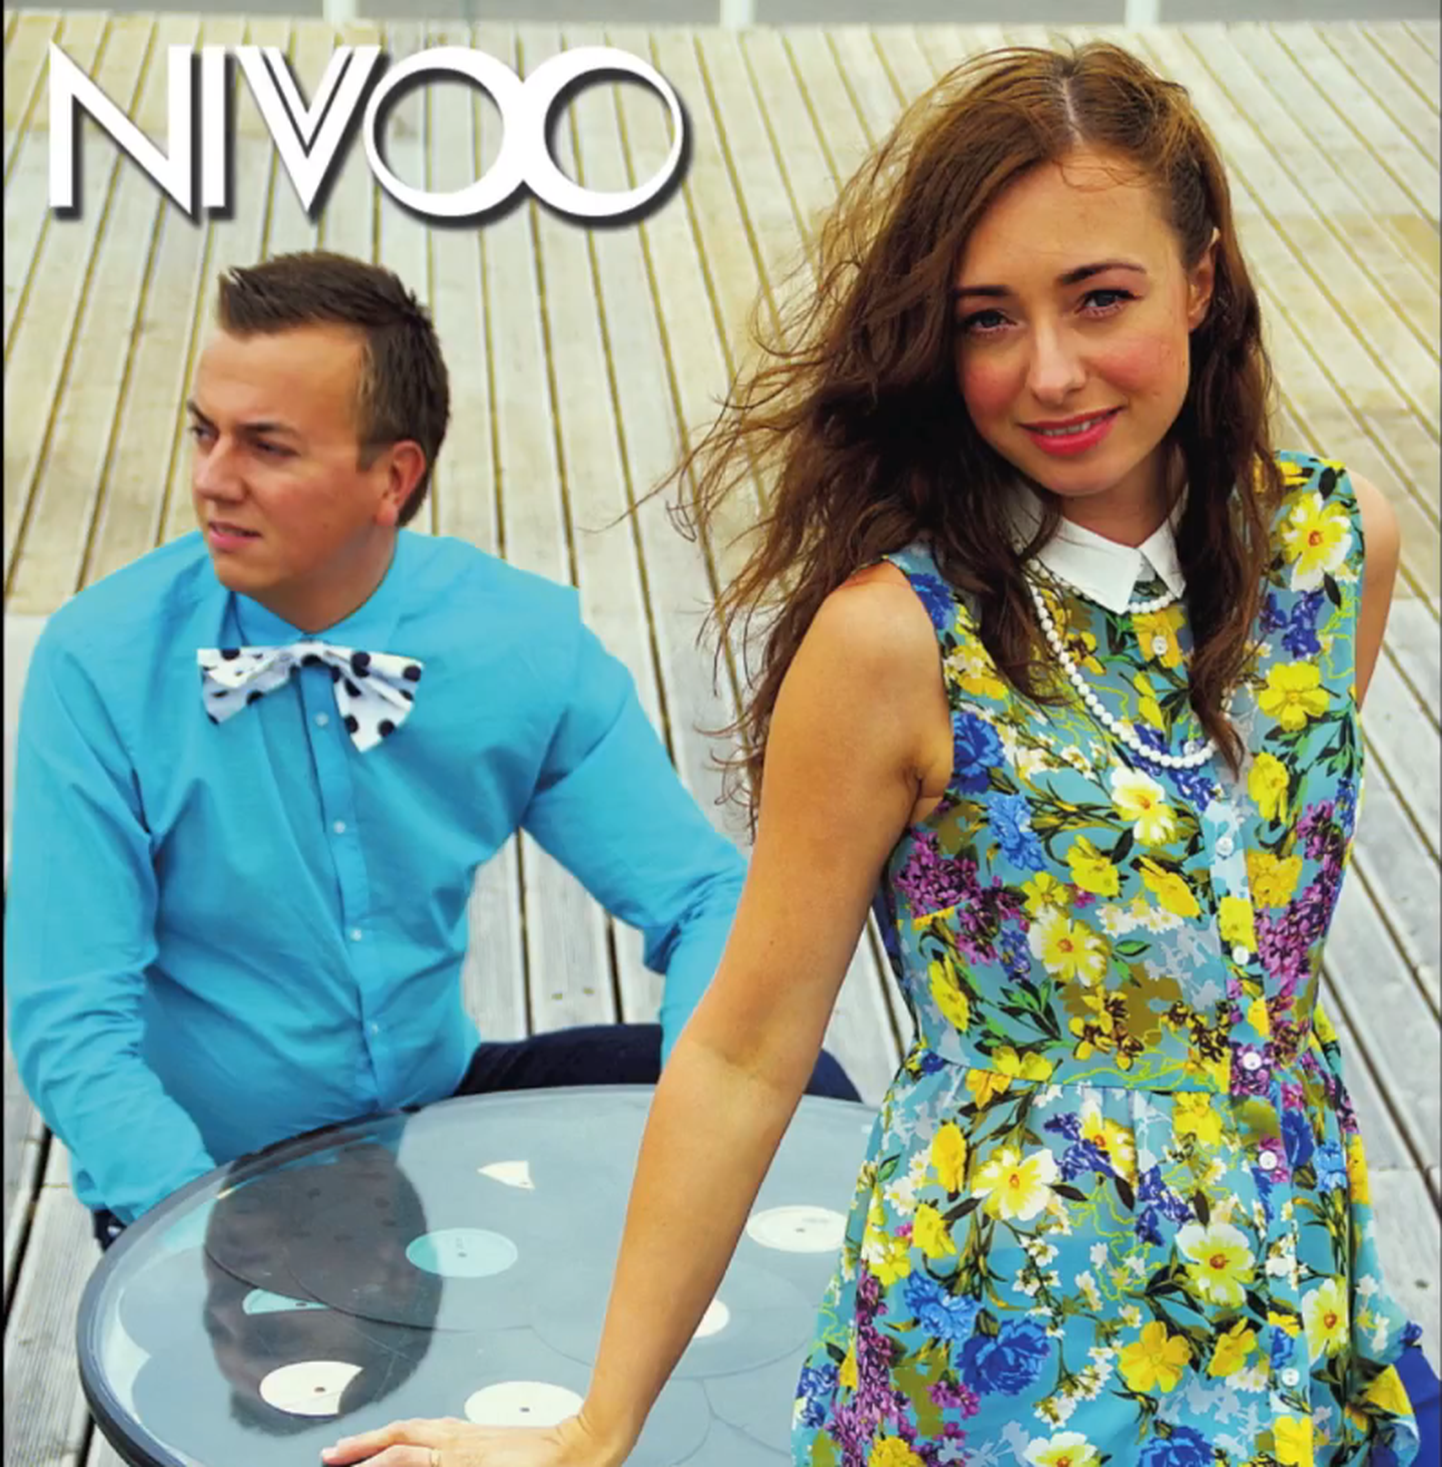 Elektroonilise muusika duo Nivoo